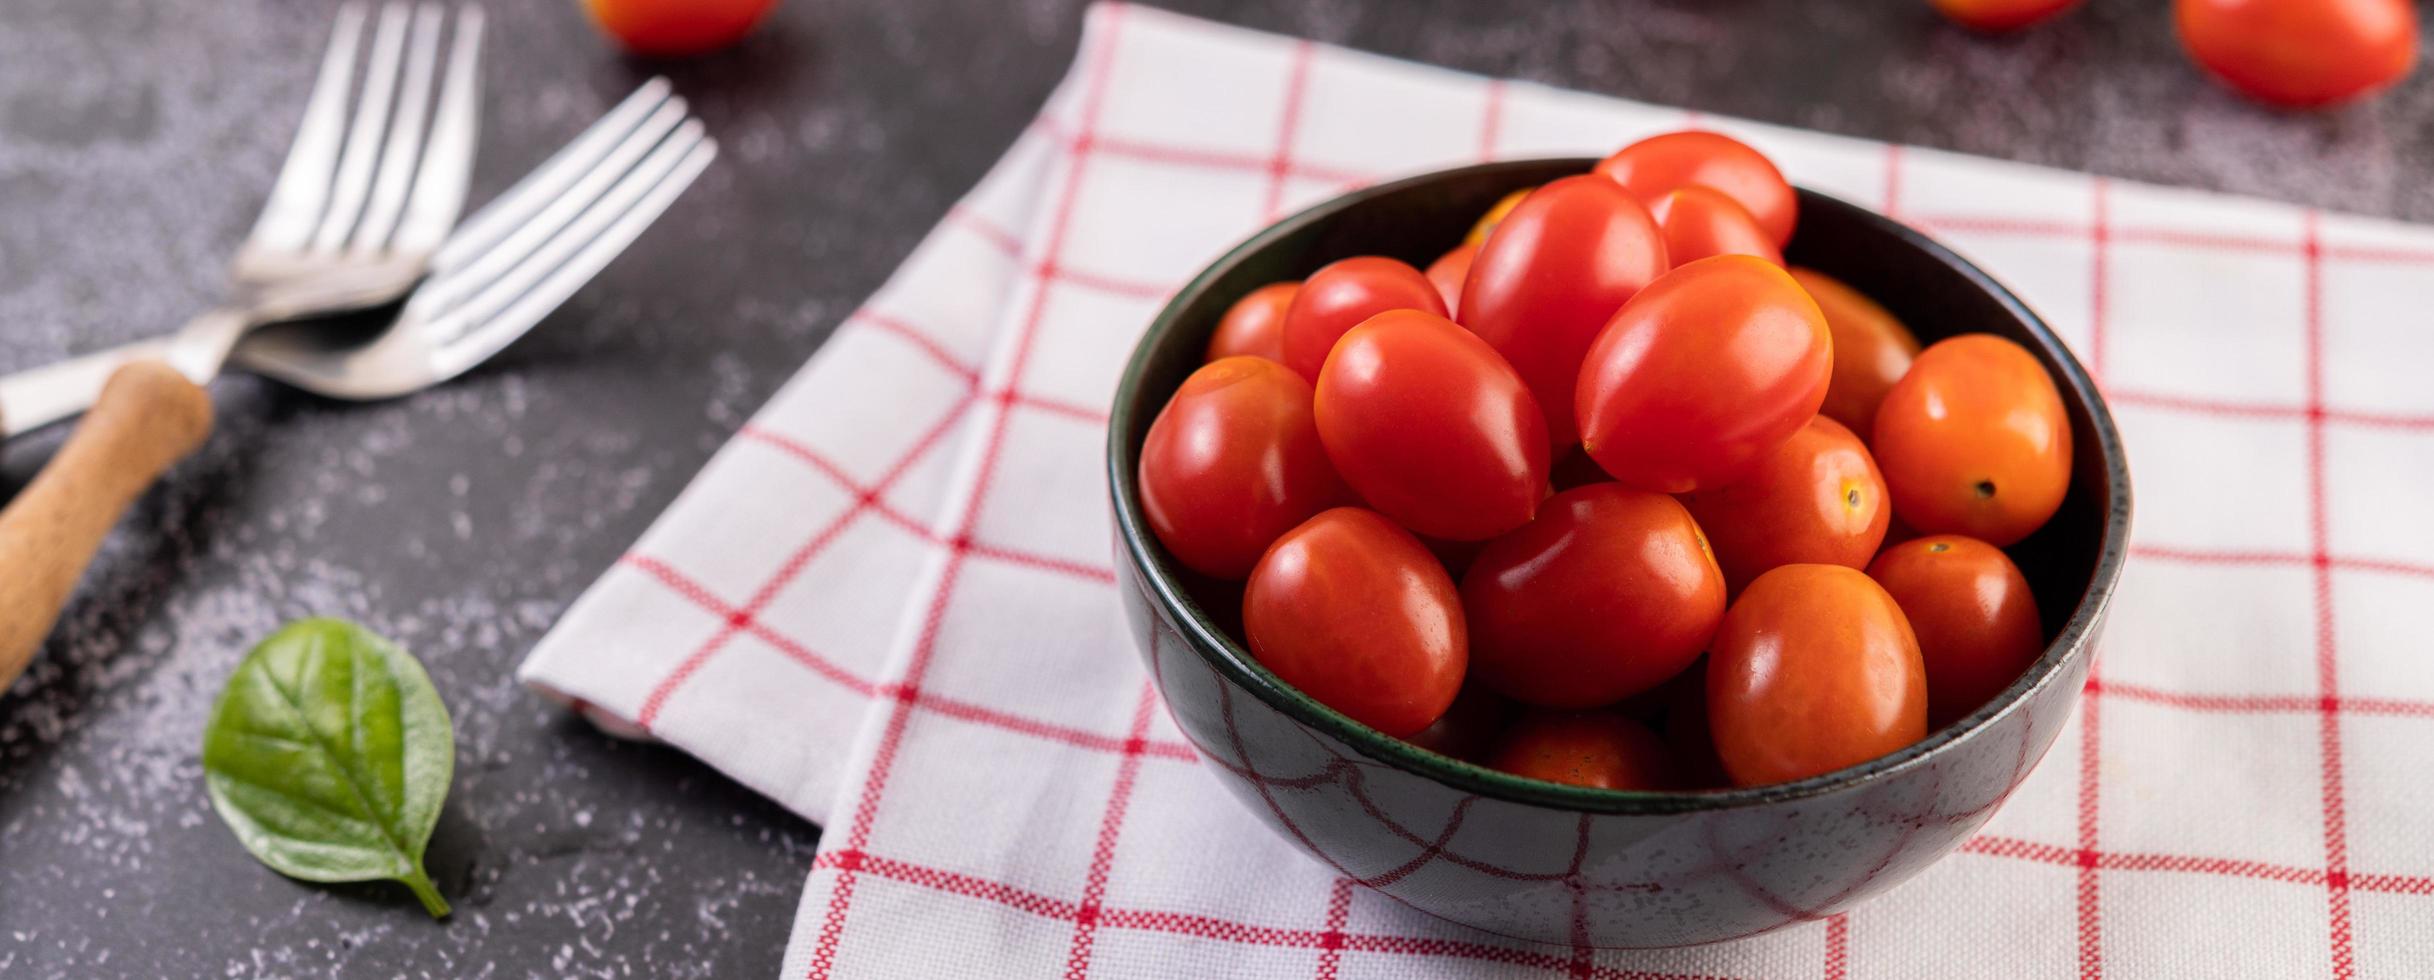 verse rijpe tomaten op een rode geruite doek foto